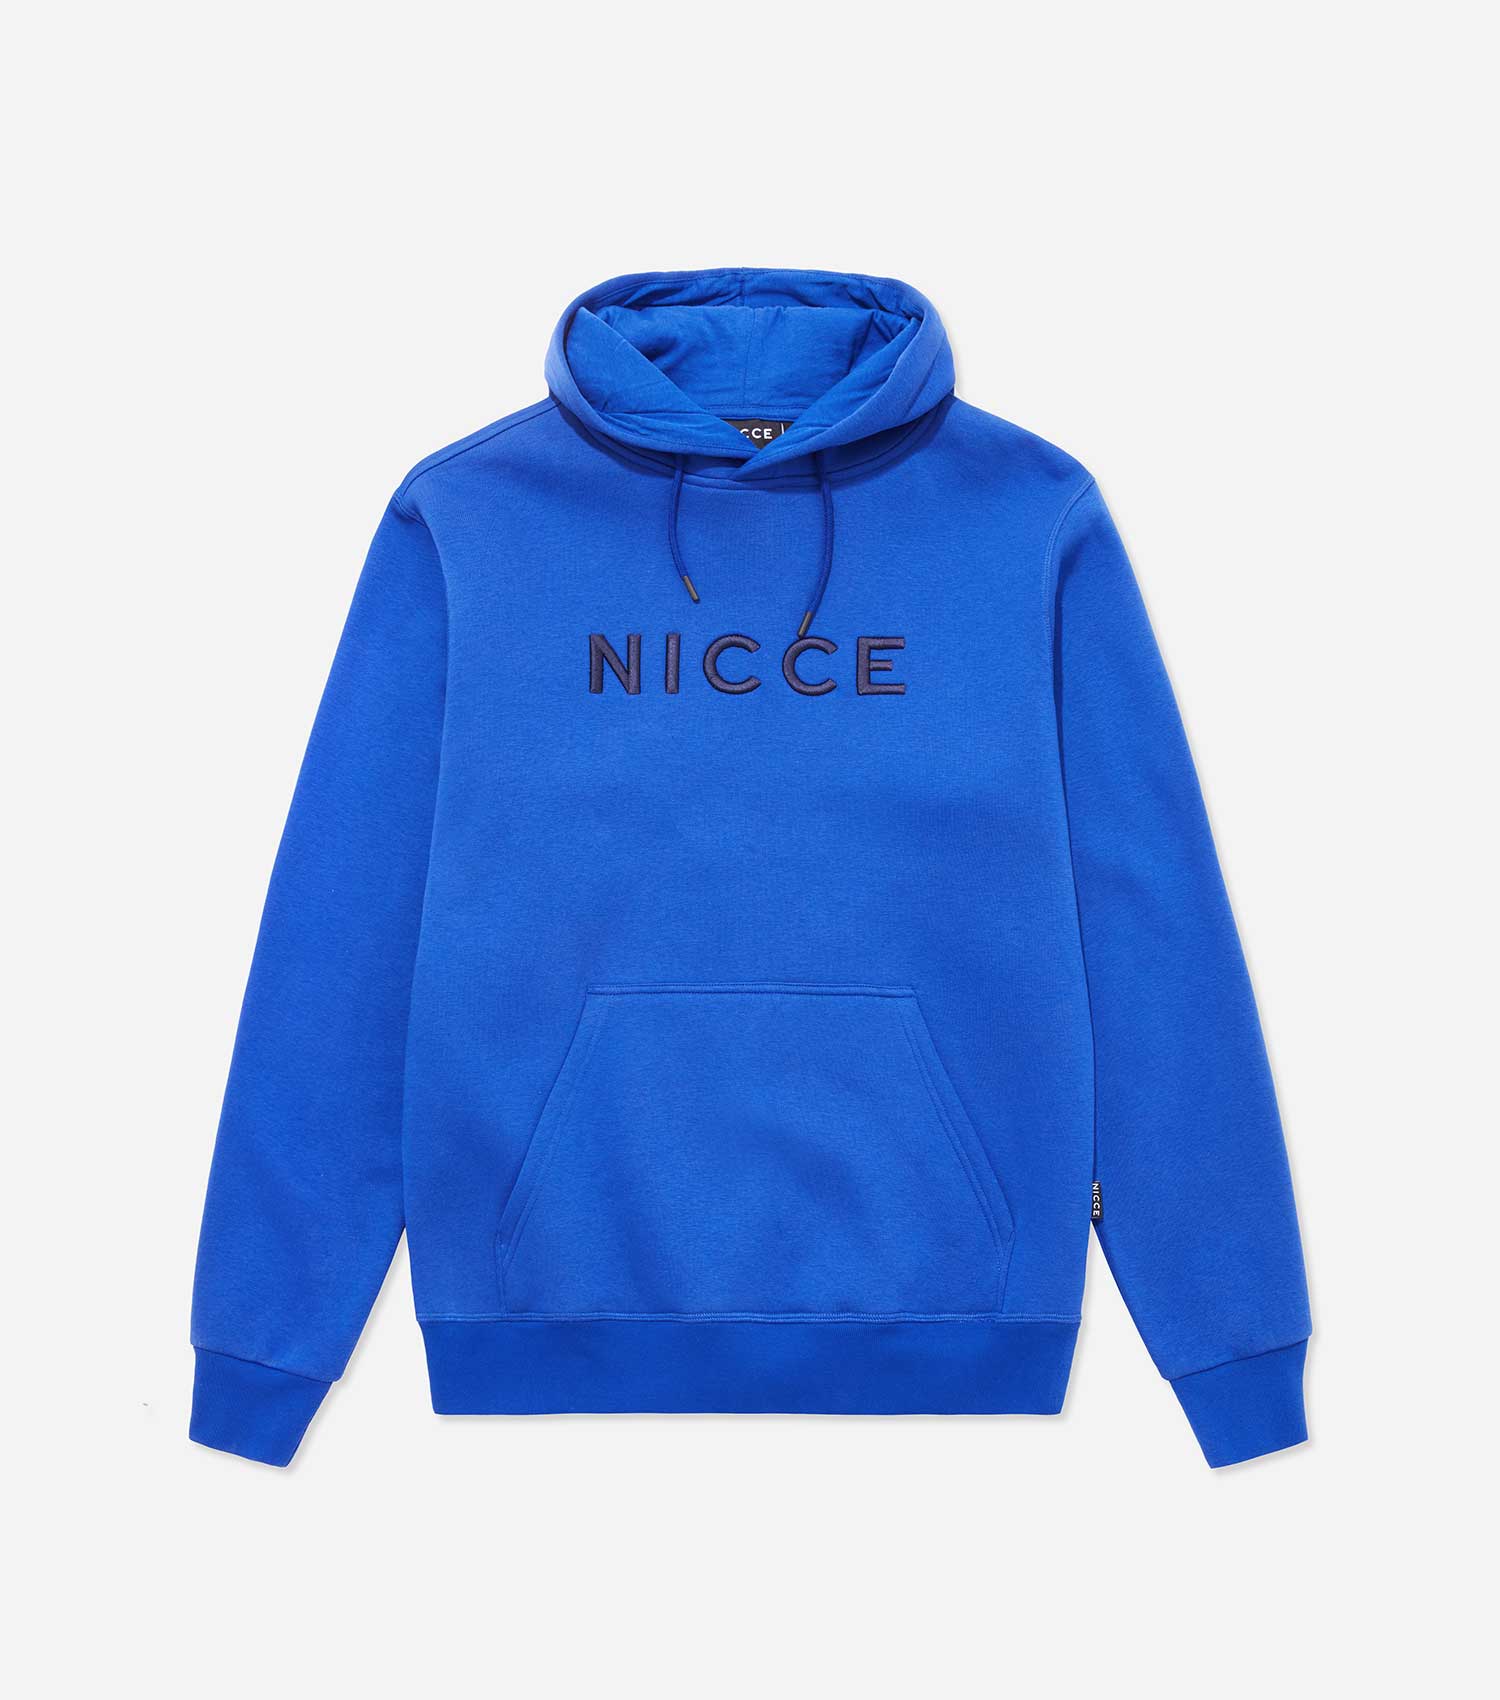 nicce hoodie blue